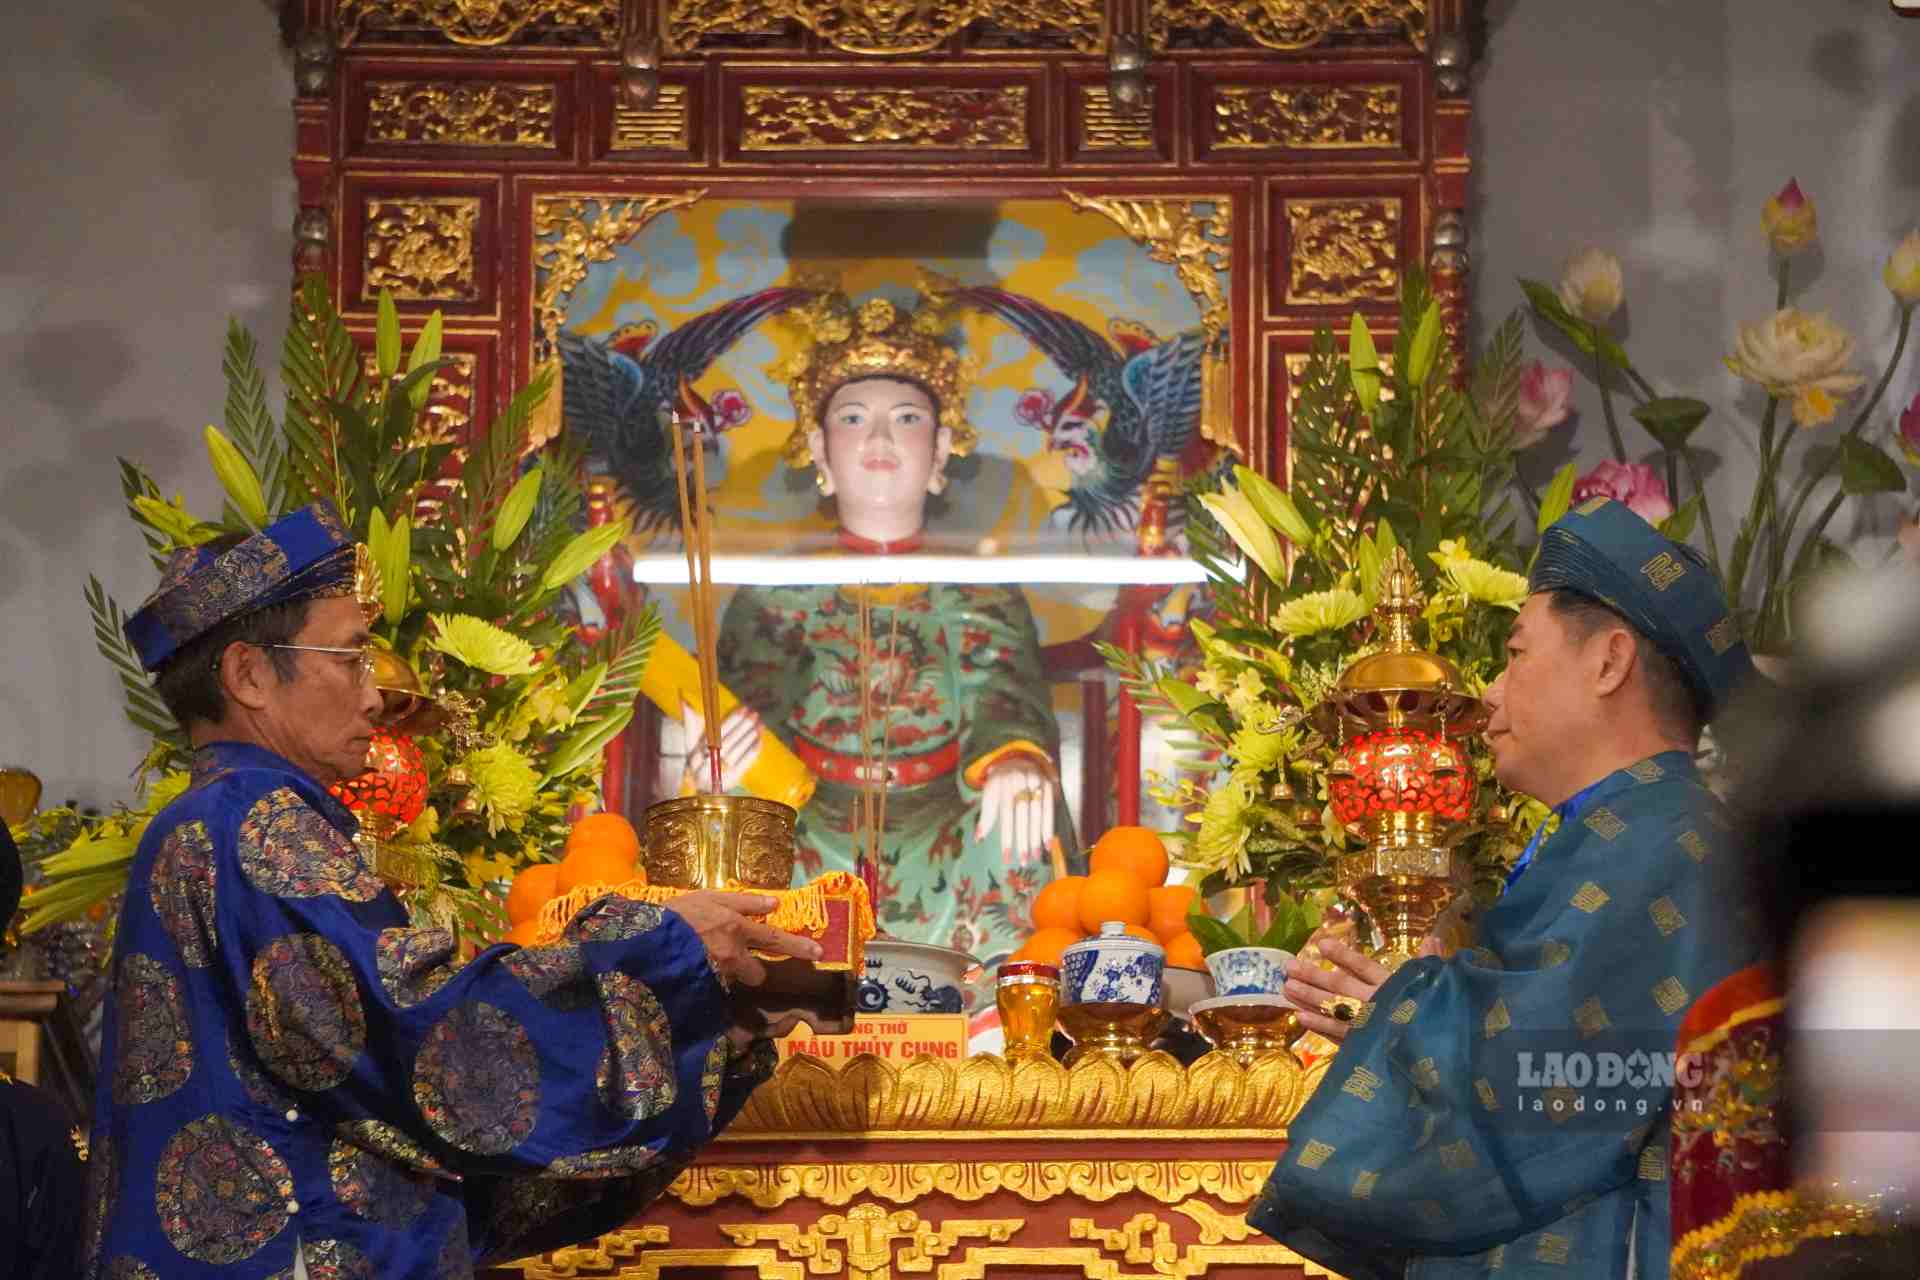 Ngày 10.4, hàng ngàn tín đồ của tín ngưỡng thờ Mẫu Việt Nam đã đổ về tham gia Lễ hội Điện Huệ Nam tại TP Huế. Đây là một trong lễ hội dân gian xứ Huế trong khuôn khổ Festival Huế - Festival bốn mùa.